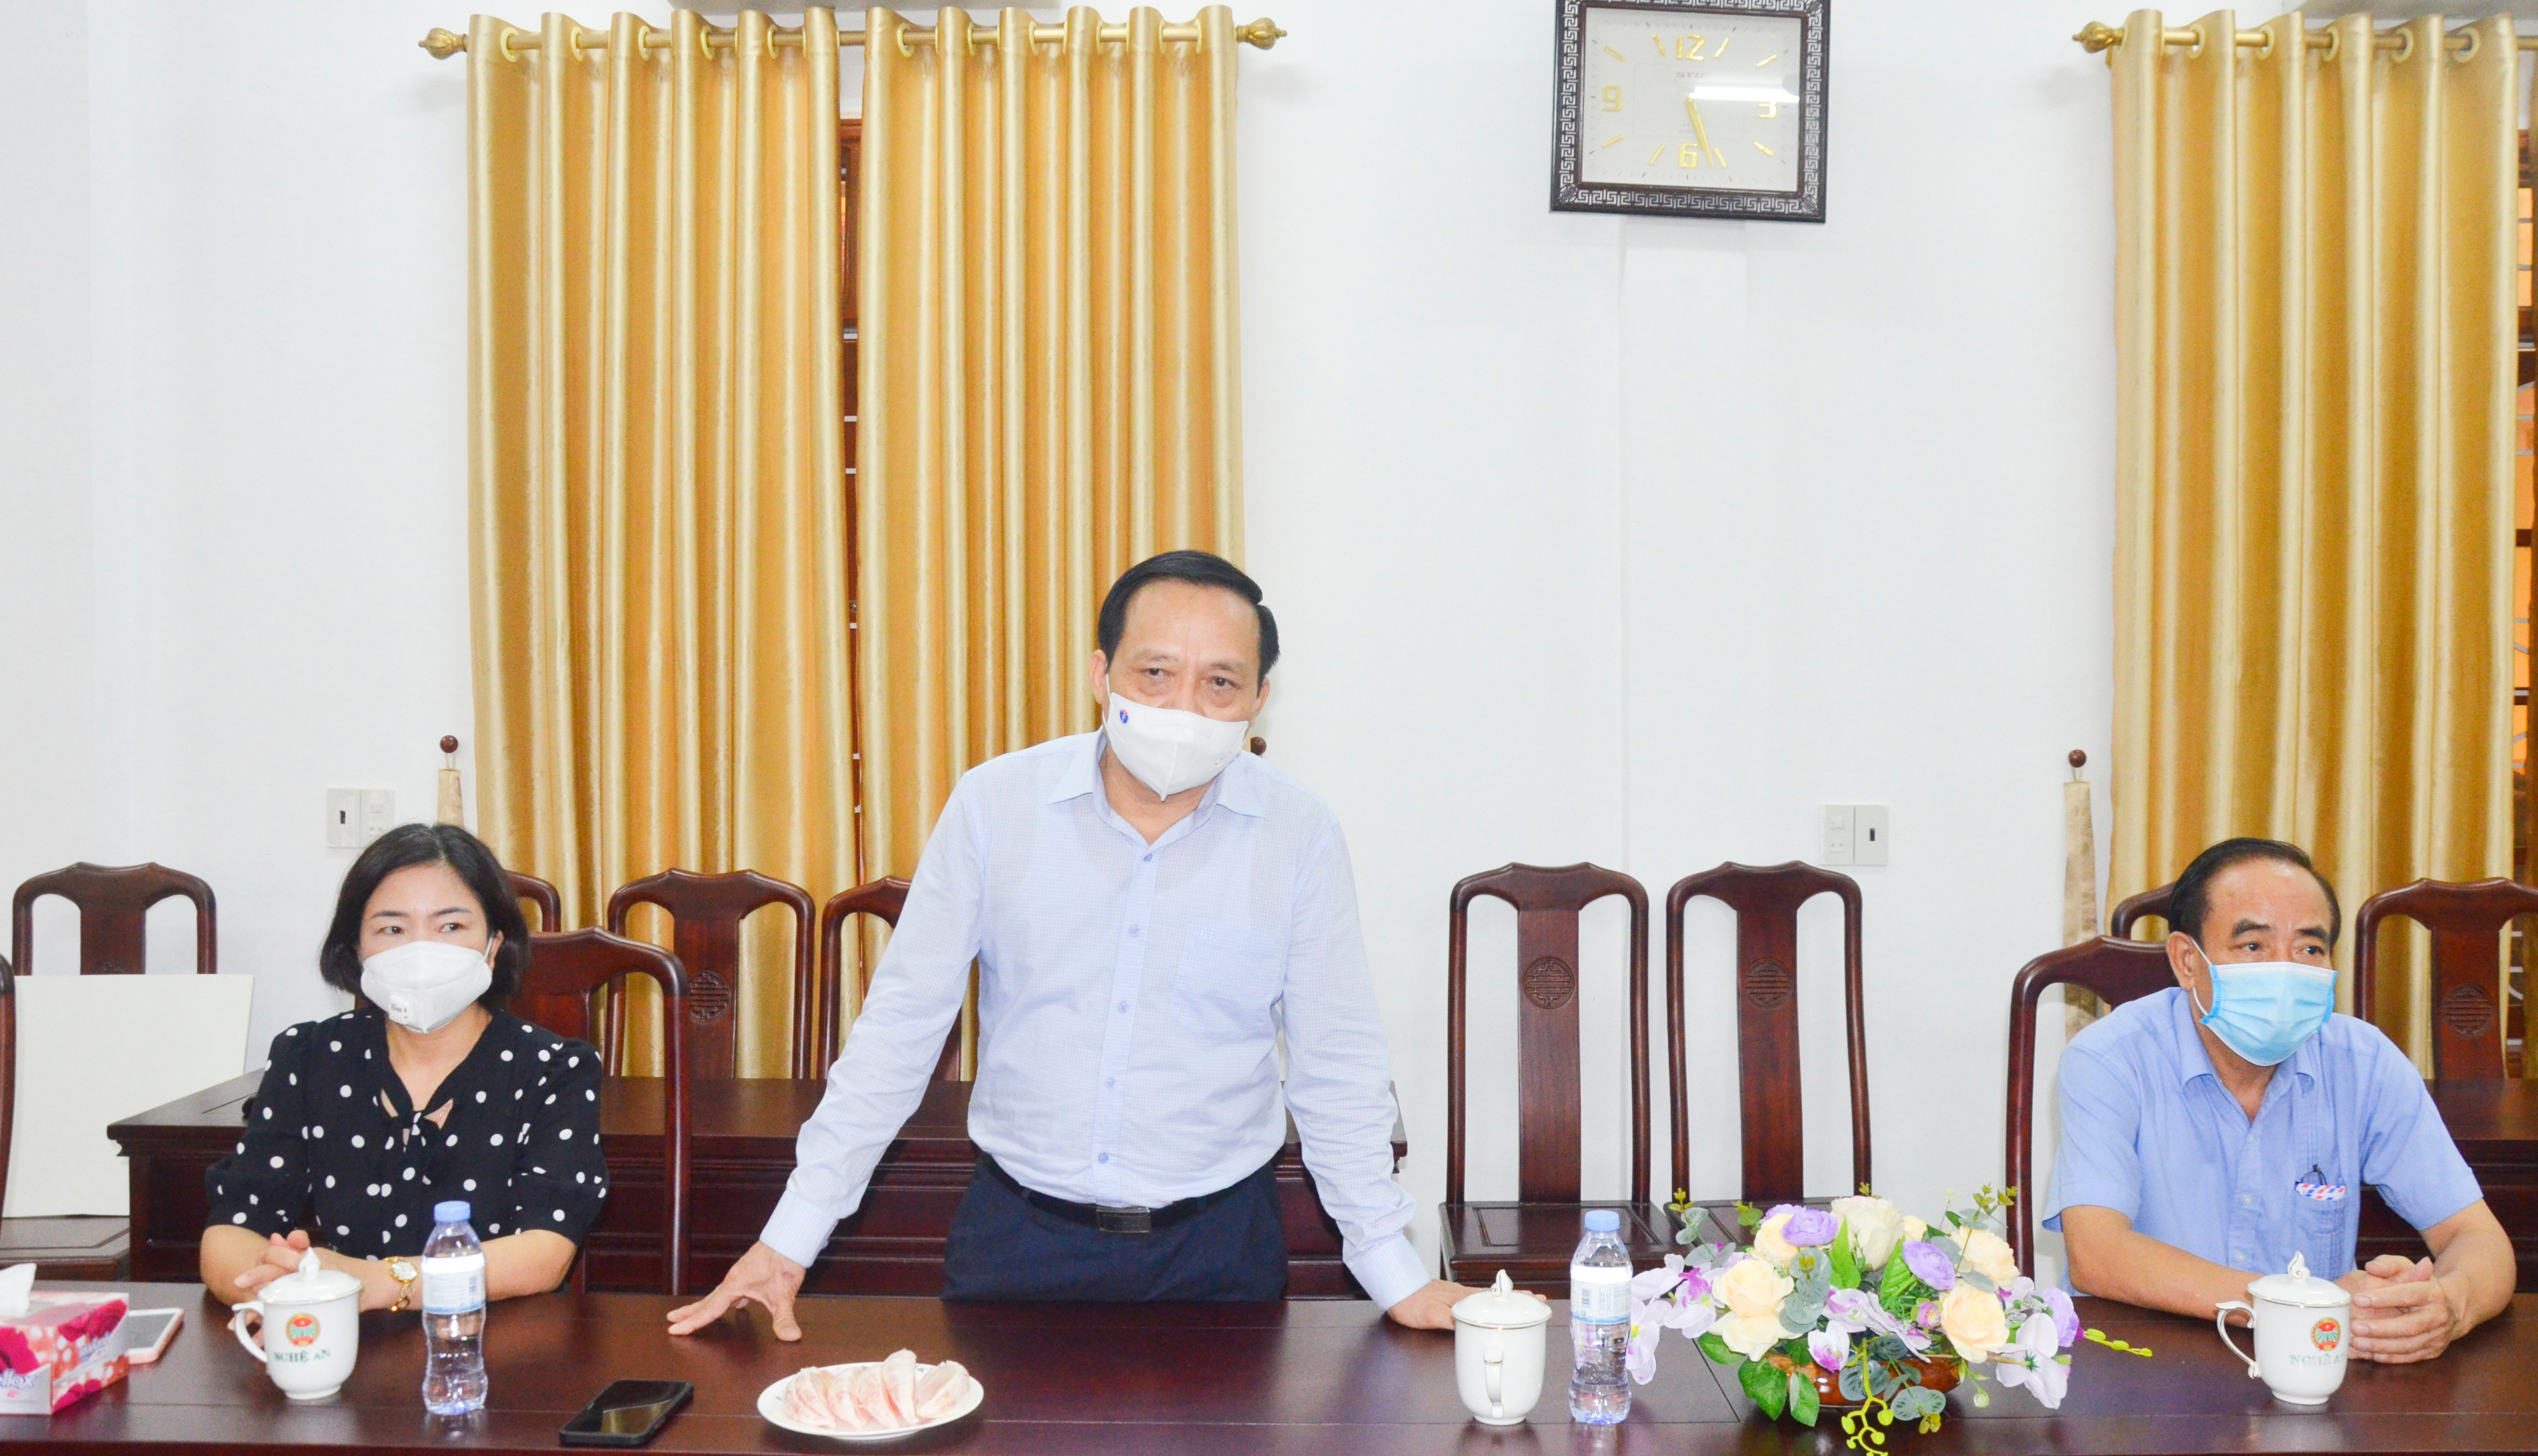 Chủ tịch Hội Nông dân tỉnh Nghệ An Nguyễn Quang Tùng gửi lời cảm ơn tới Hội Nông dân các cấp và hội viên nông dân tỉnh Hà Tĩnh.